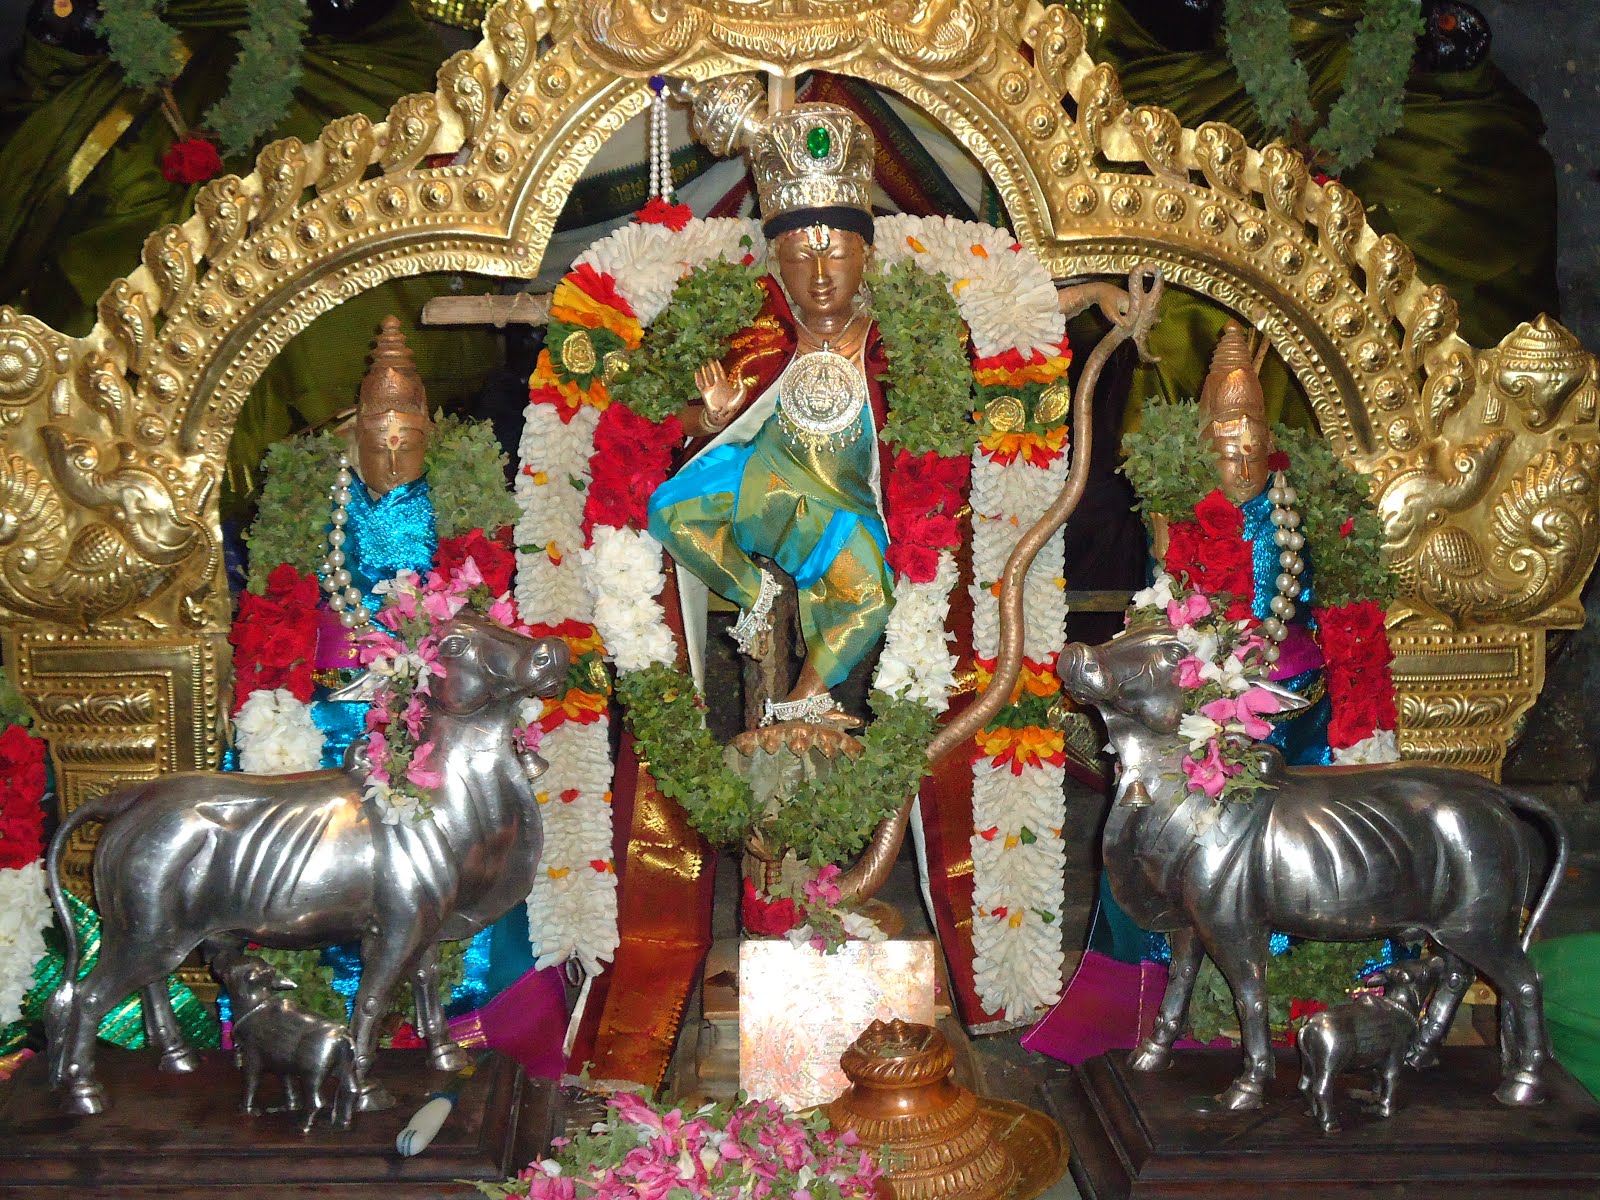 Shri Kalinga Narthana Perumal Koil, Oothukadu